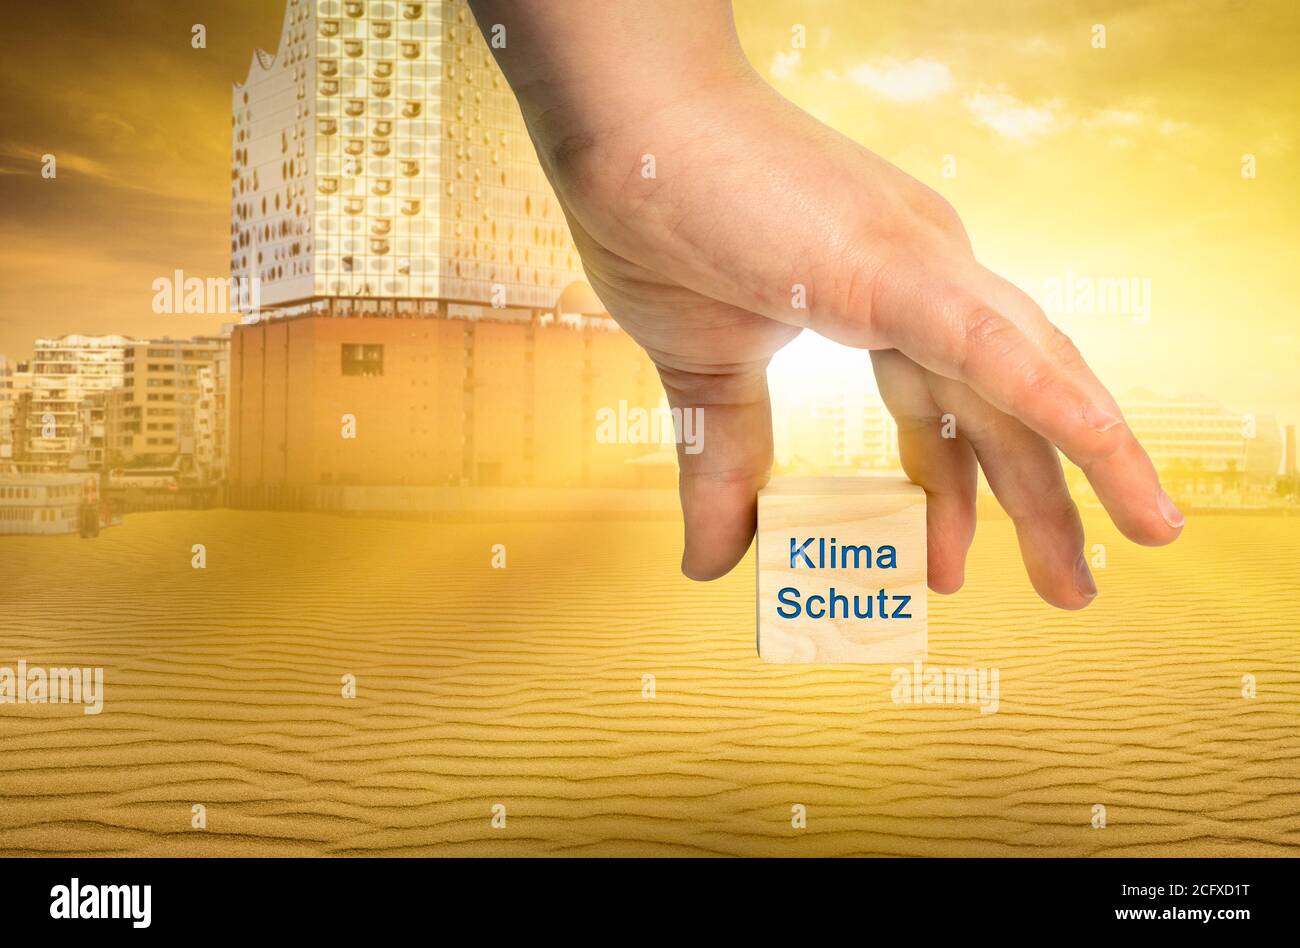 Klimaschutz nach einem abstrakten Bild von Hamburg vertreten Mit einem Kubus mit der deutschen Aufschrift Klimaschutz Stockfoto